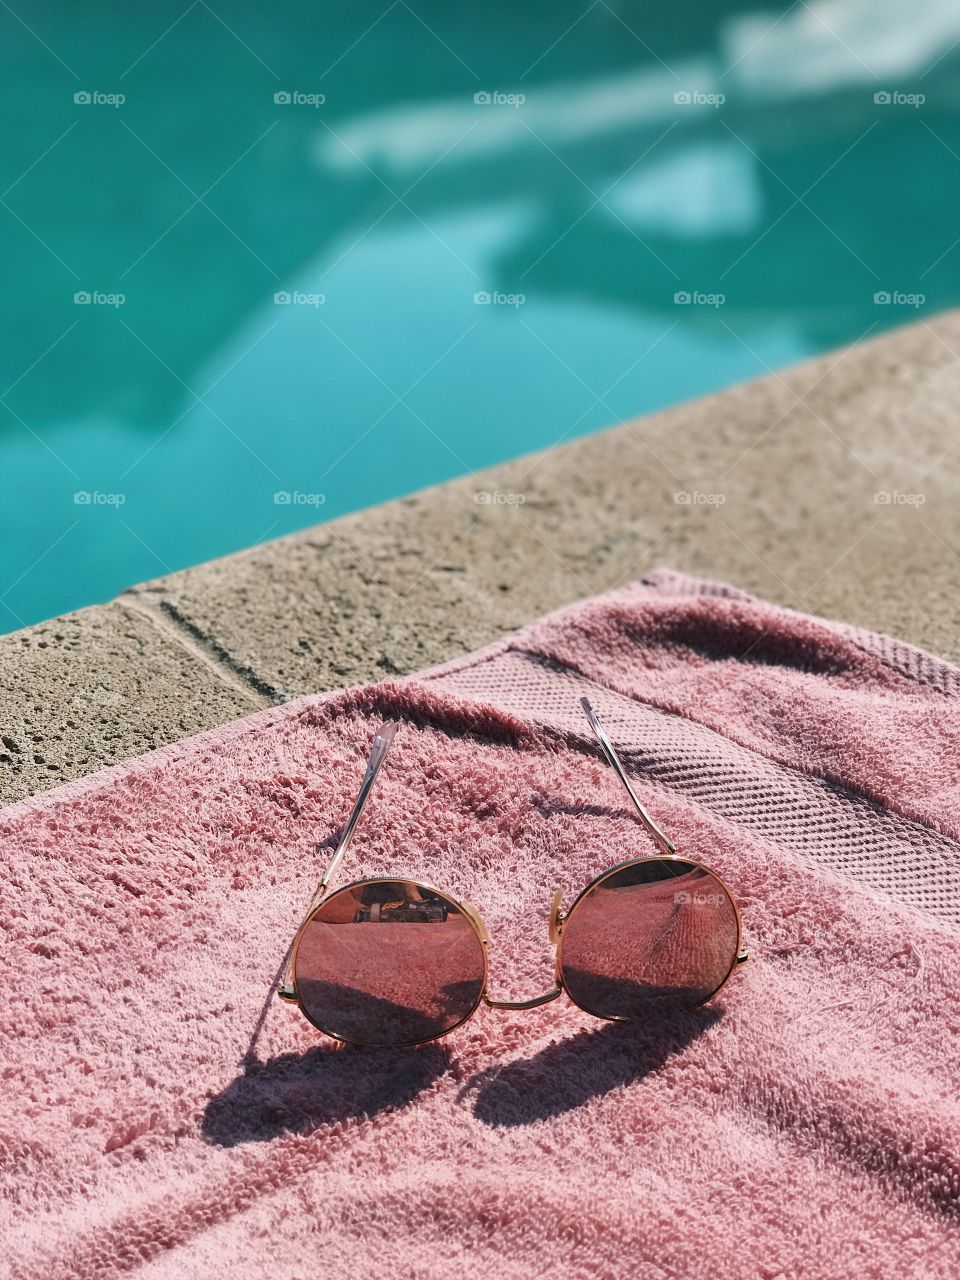 sunglasses poolside